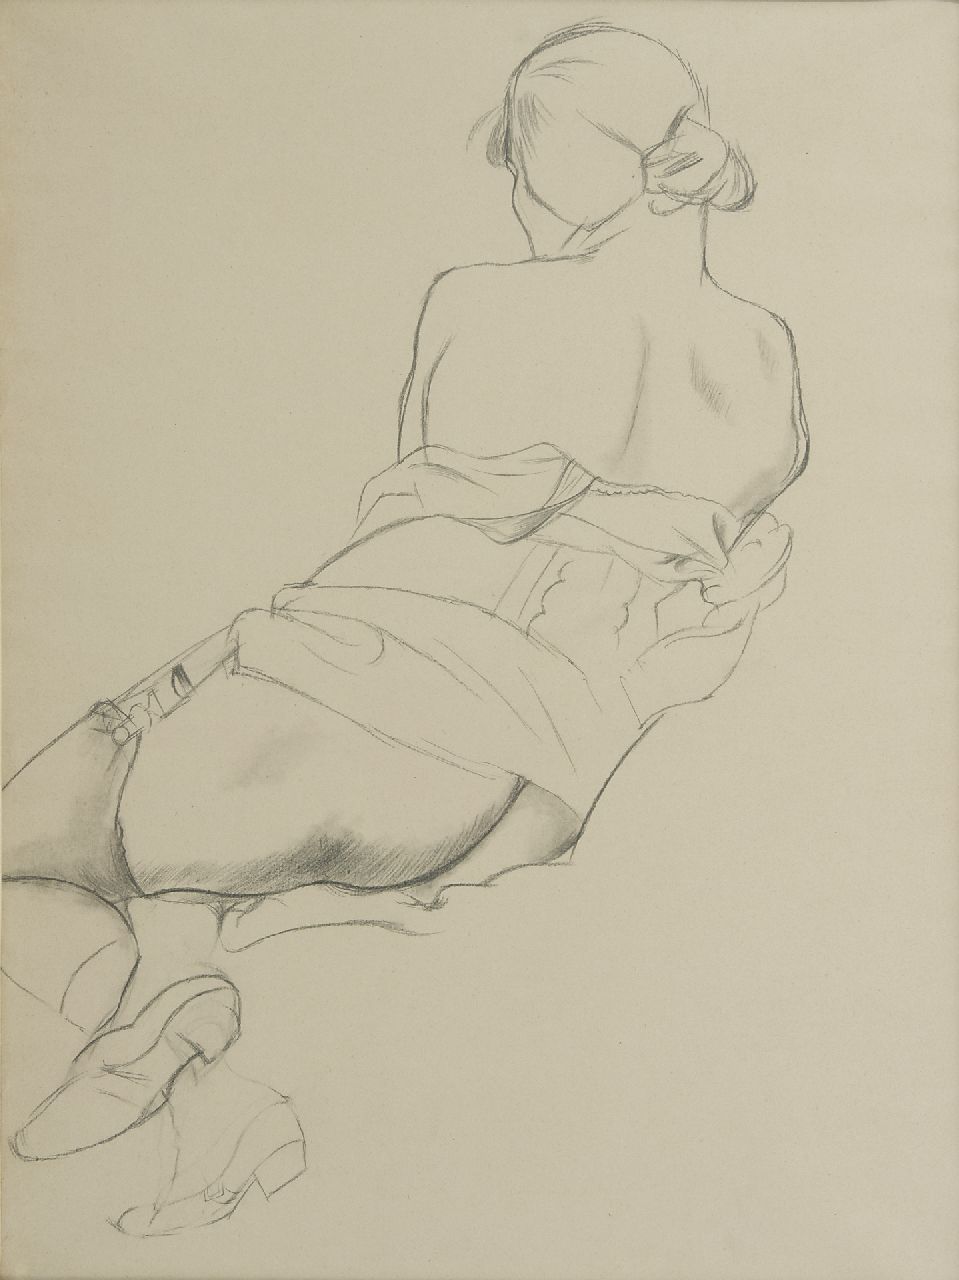 George Grosz | Akt im Rückenansicht, Bleistift auf Papier, 58,0 x 43,0 cm, r.u. datiert mit Stempel 19 NOV 23